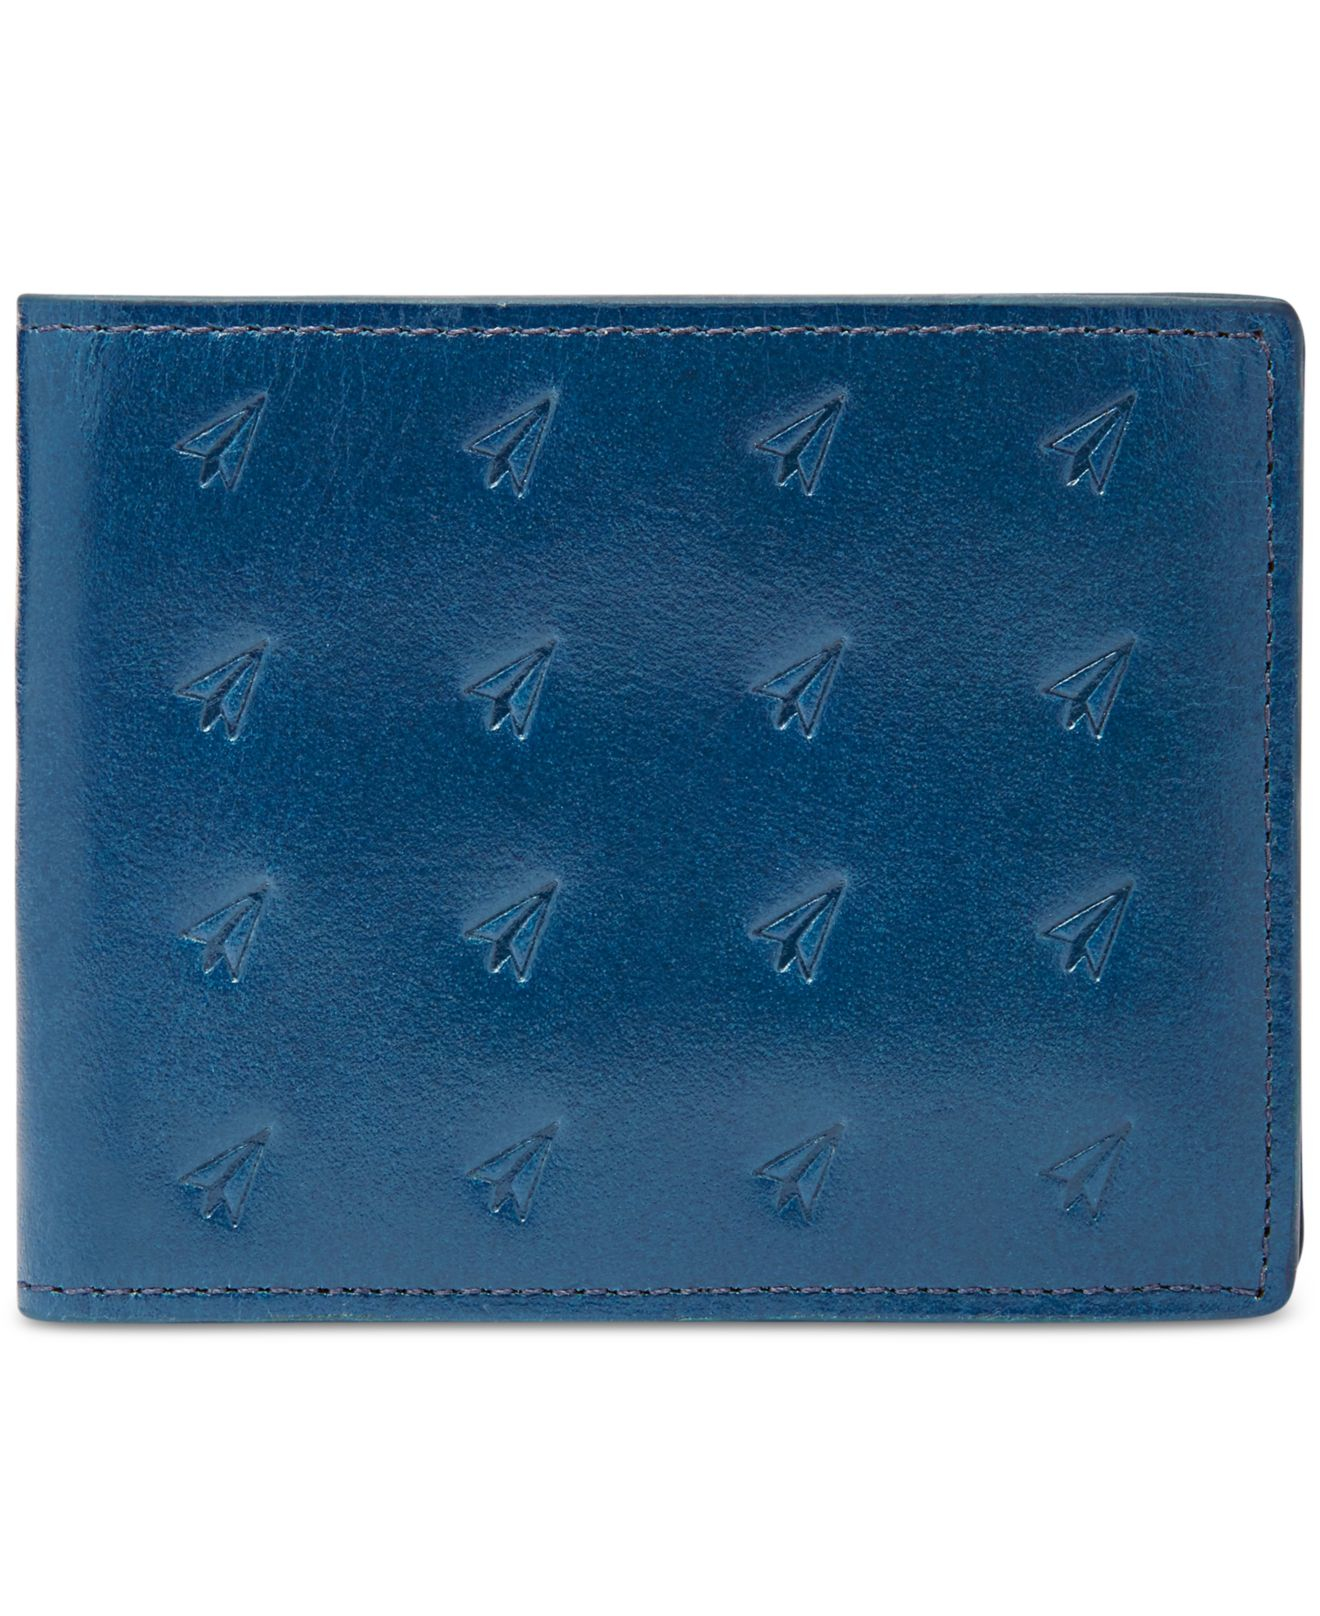 Fossil Helix L-zip Bi-fold Leather Wallet in Blue for Men